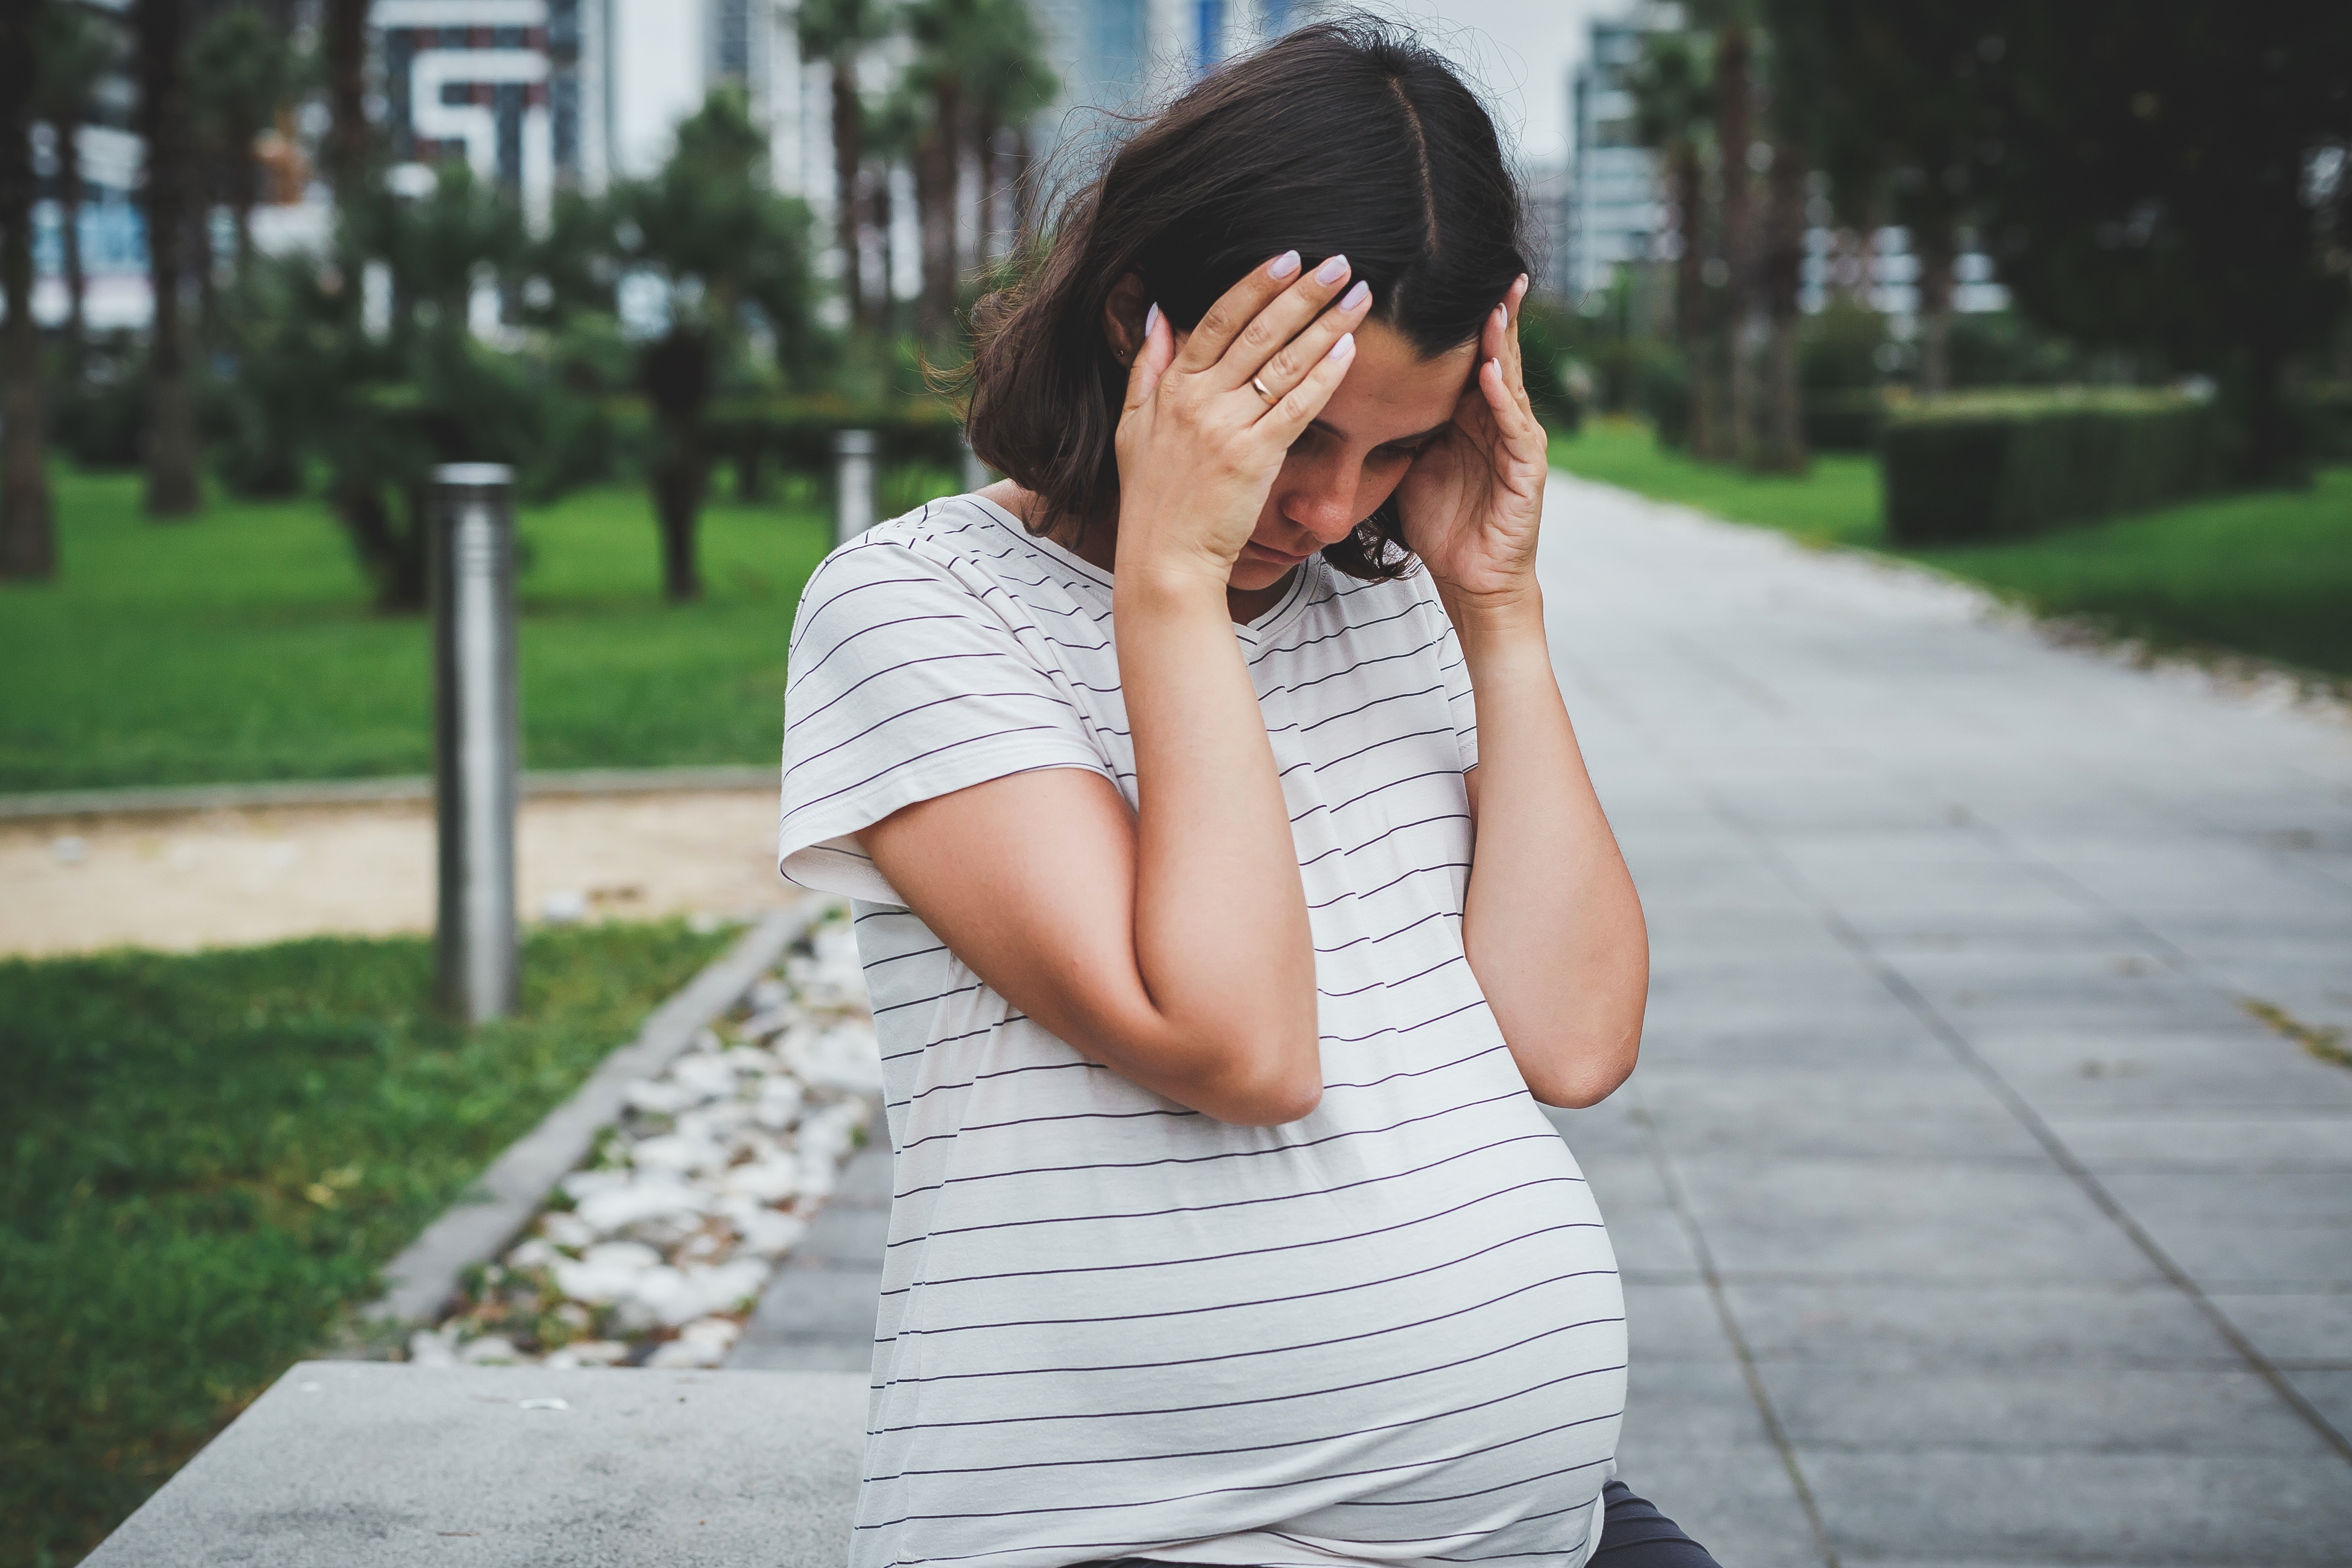 Eine frustrierte schwangere Frau | Quelle: Shutterstock